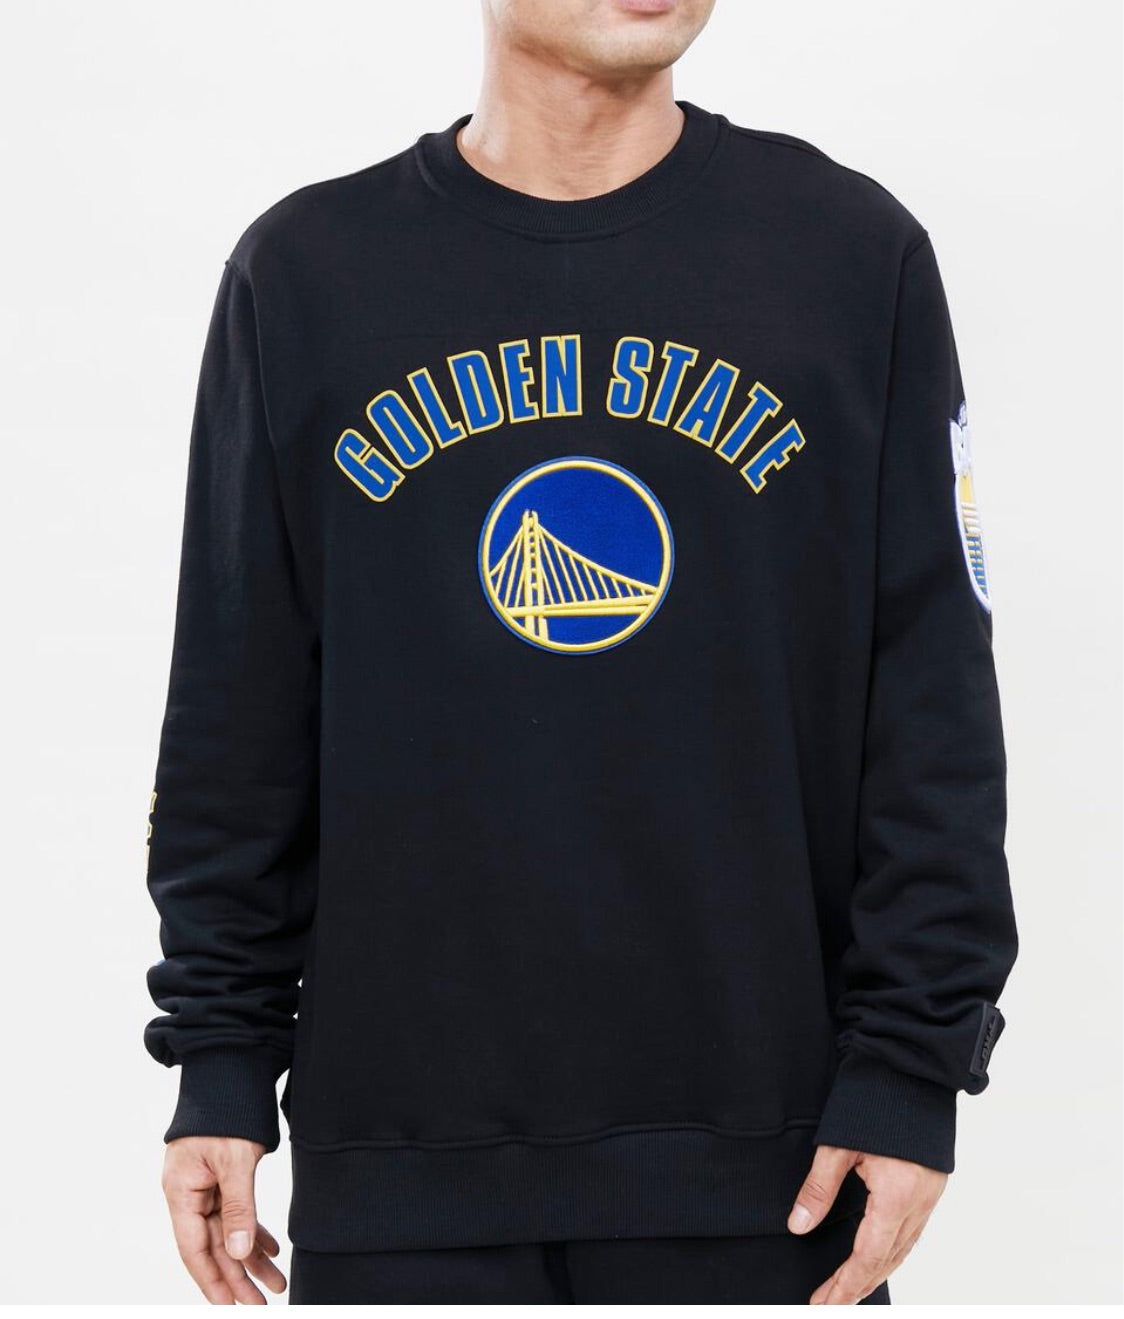 Pro Standard Golden State Warriors Crew Sweatshirt